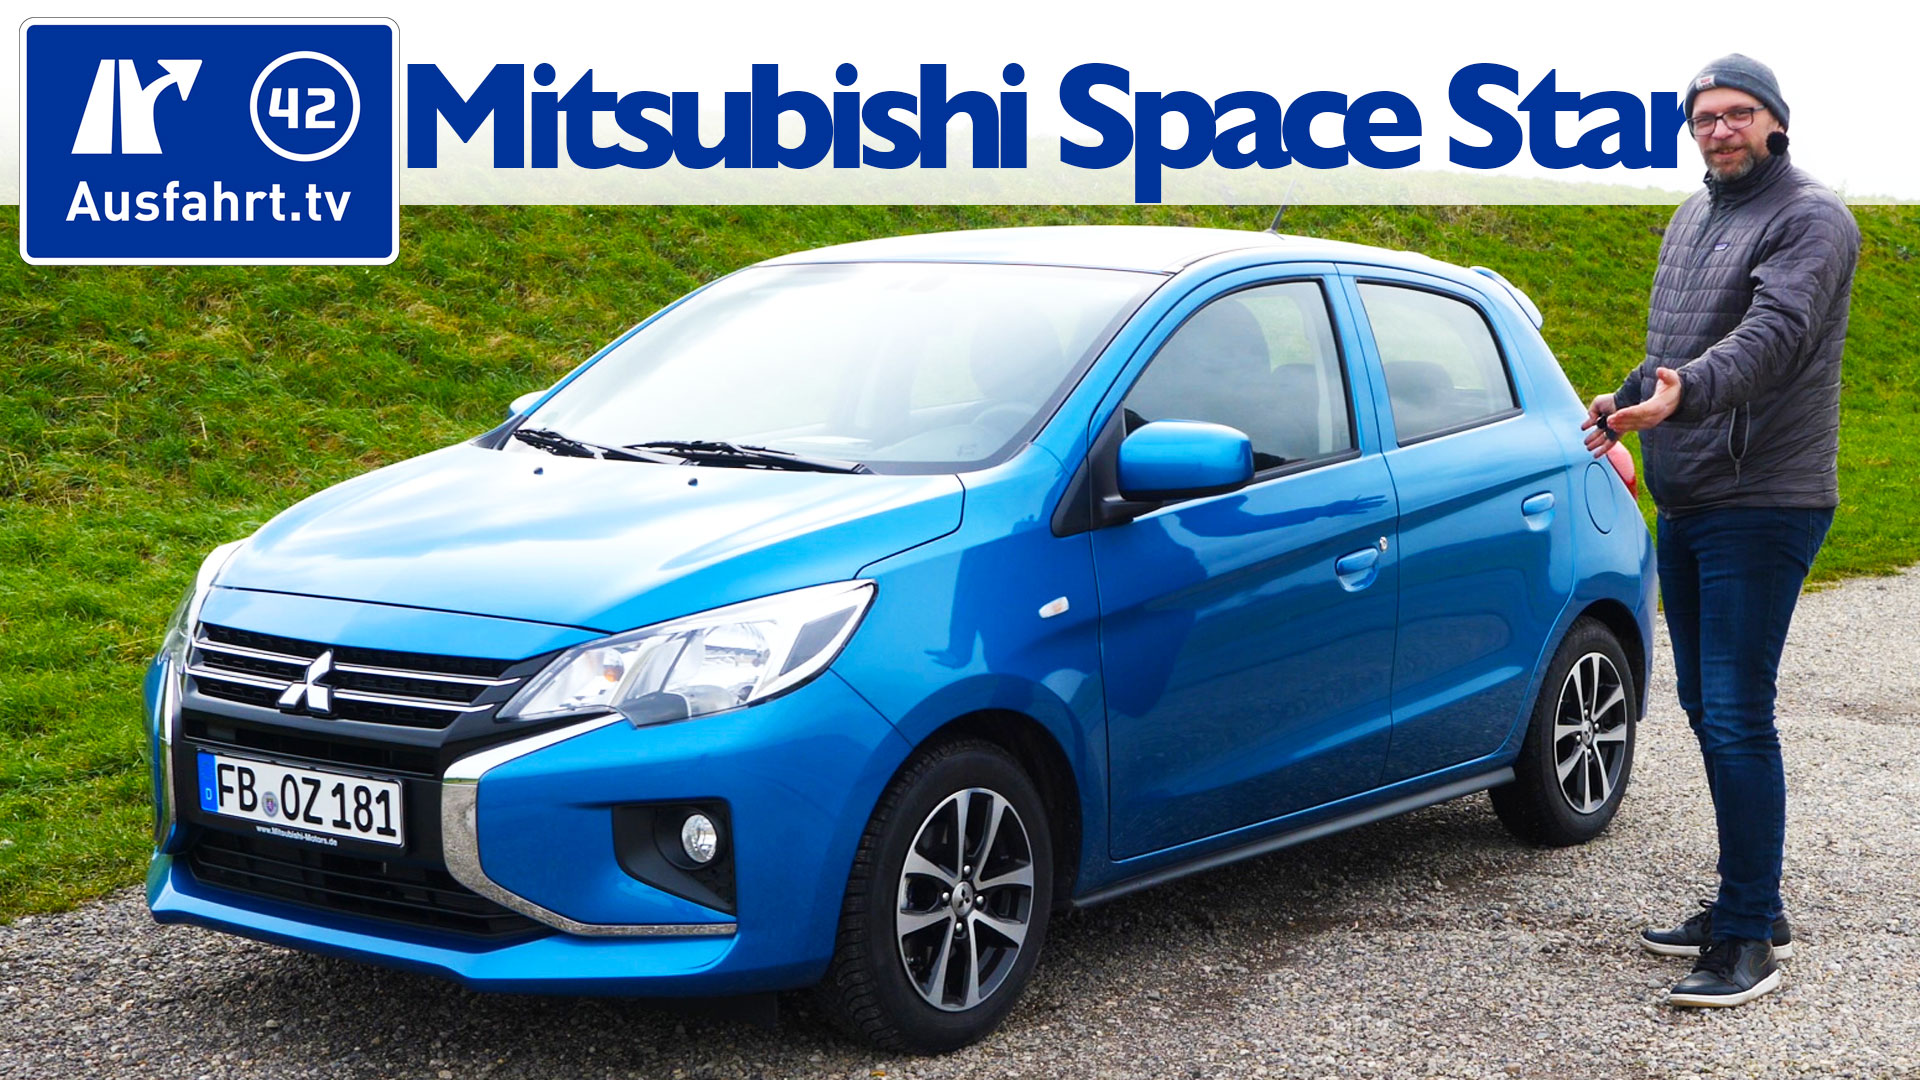 2020 Mitsubishi Space Star 1.0 Intro Edition –